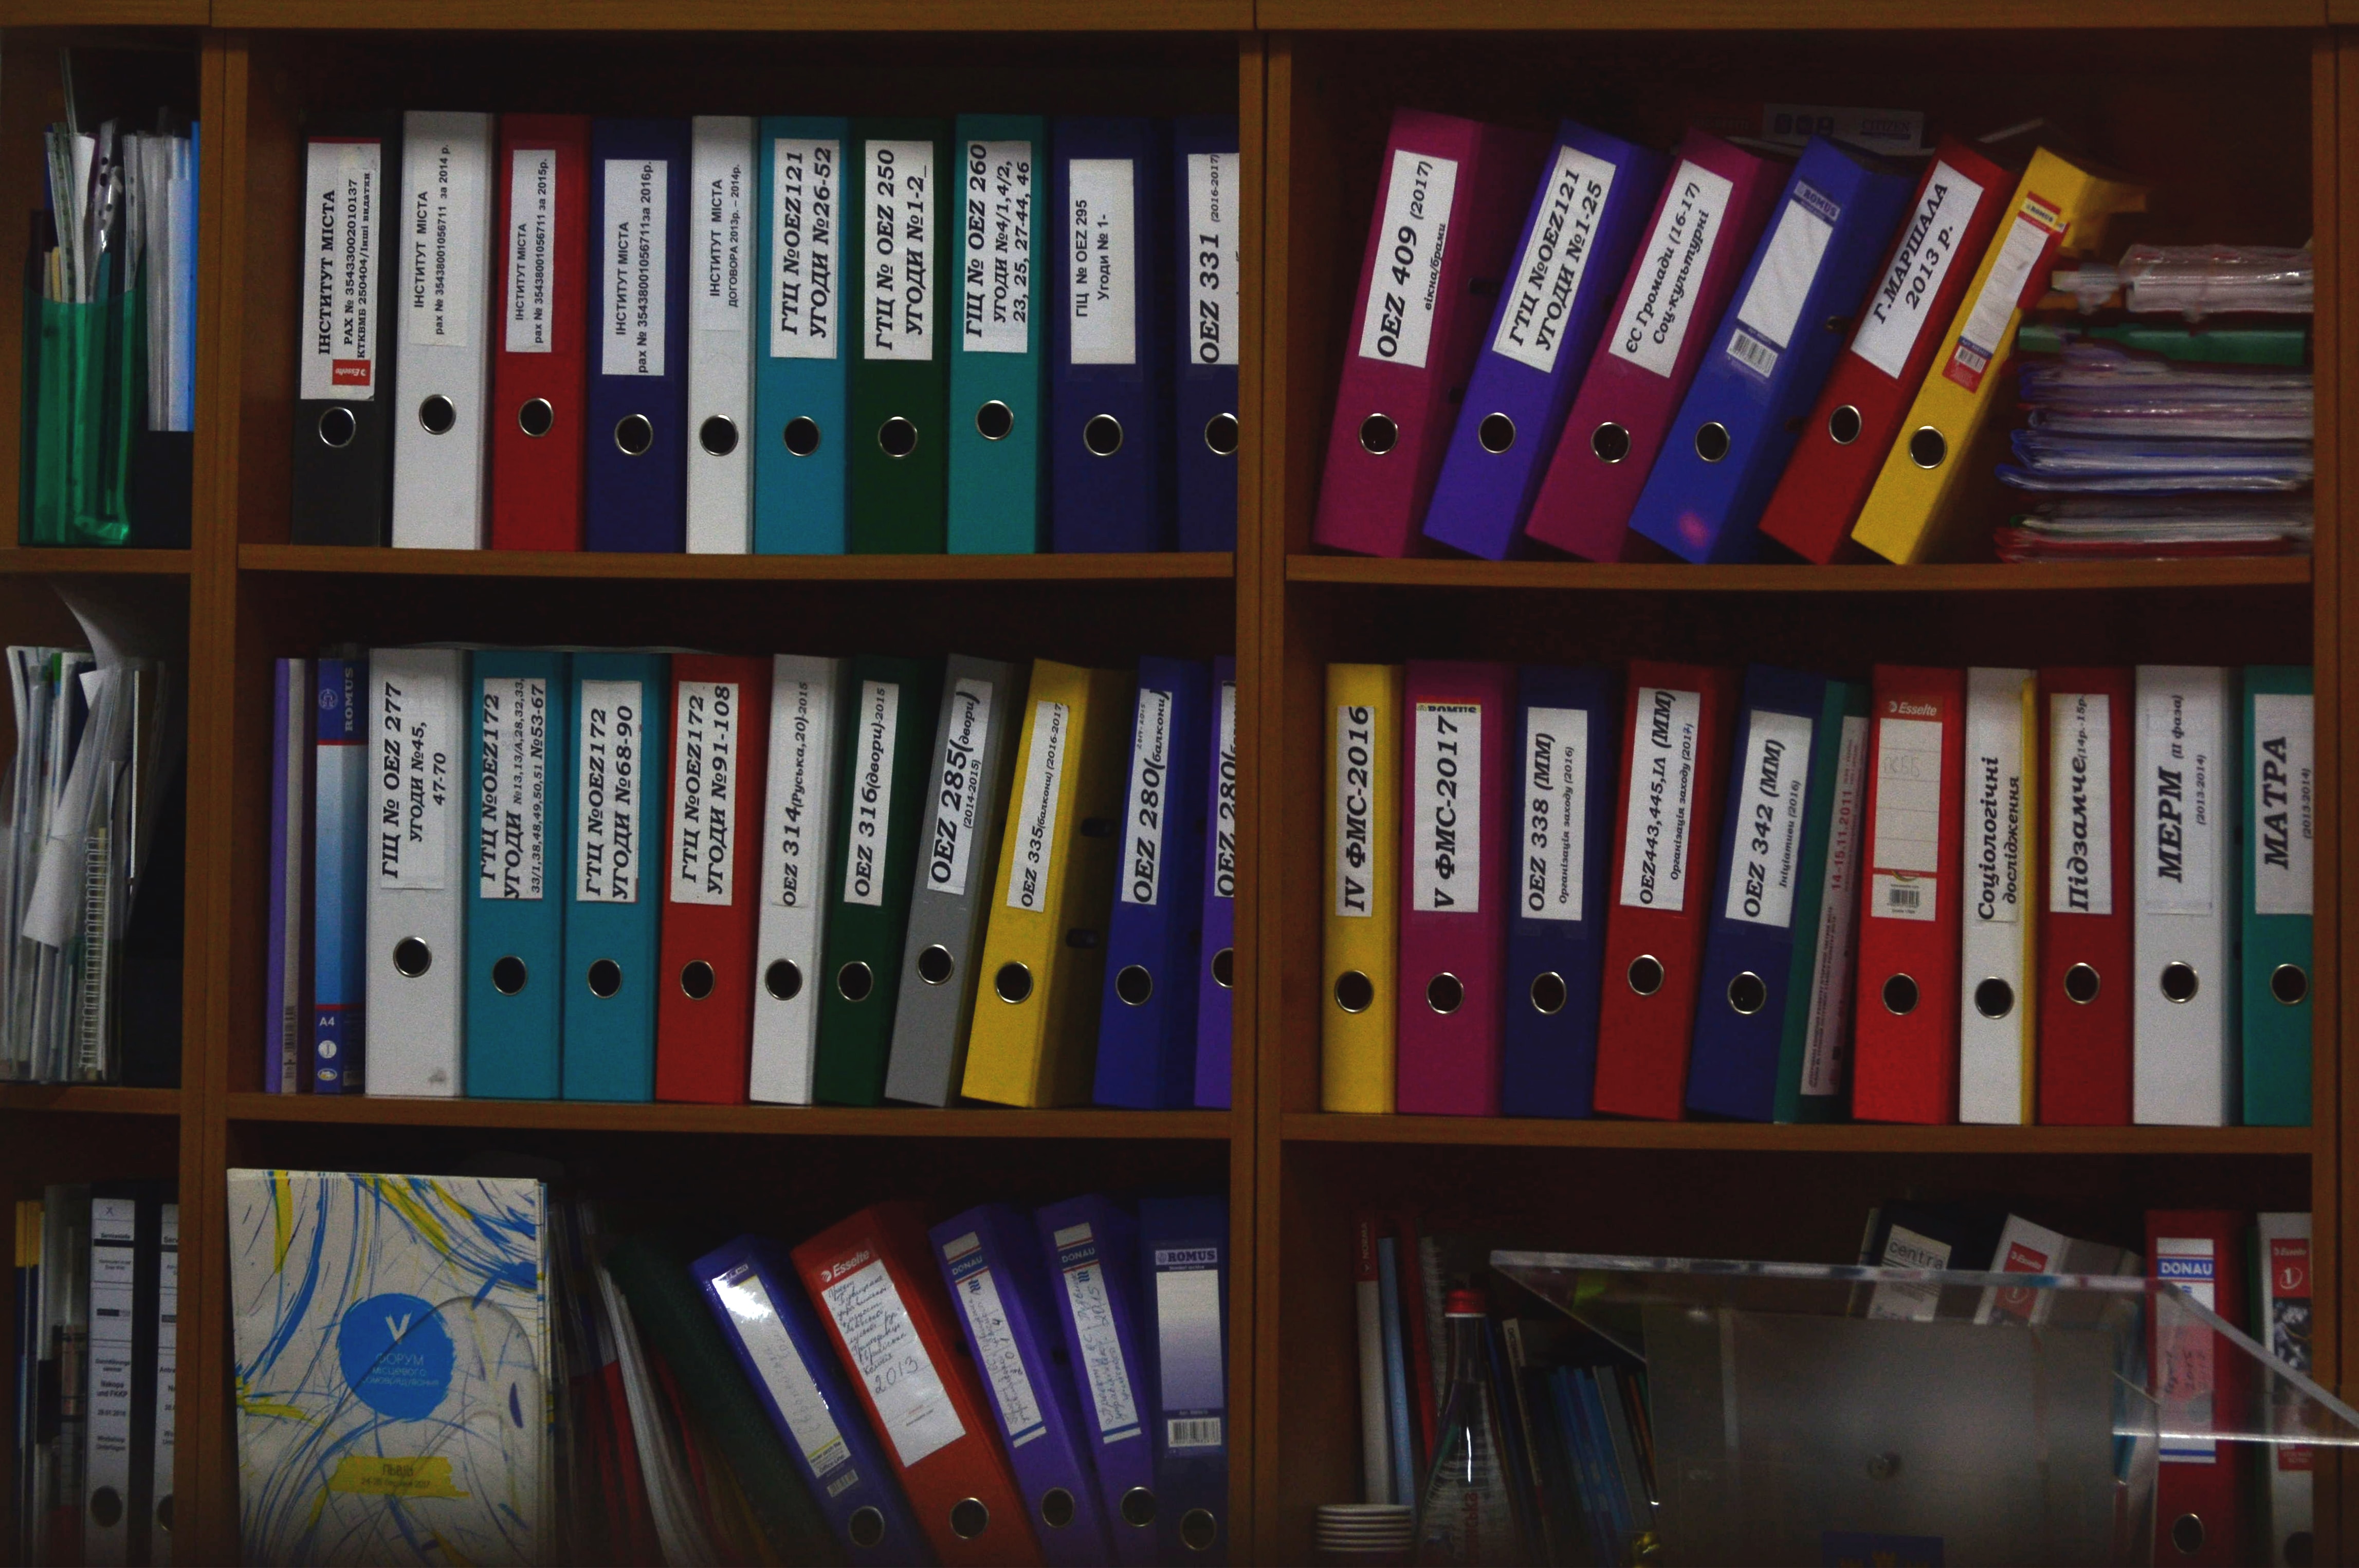 folders arranged on shelves